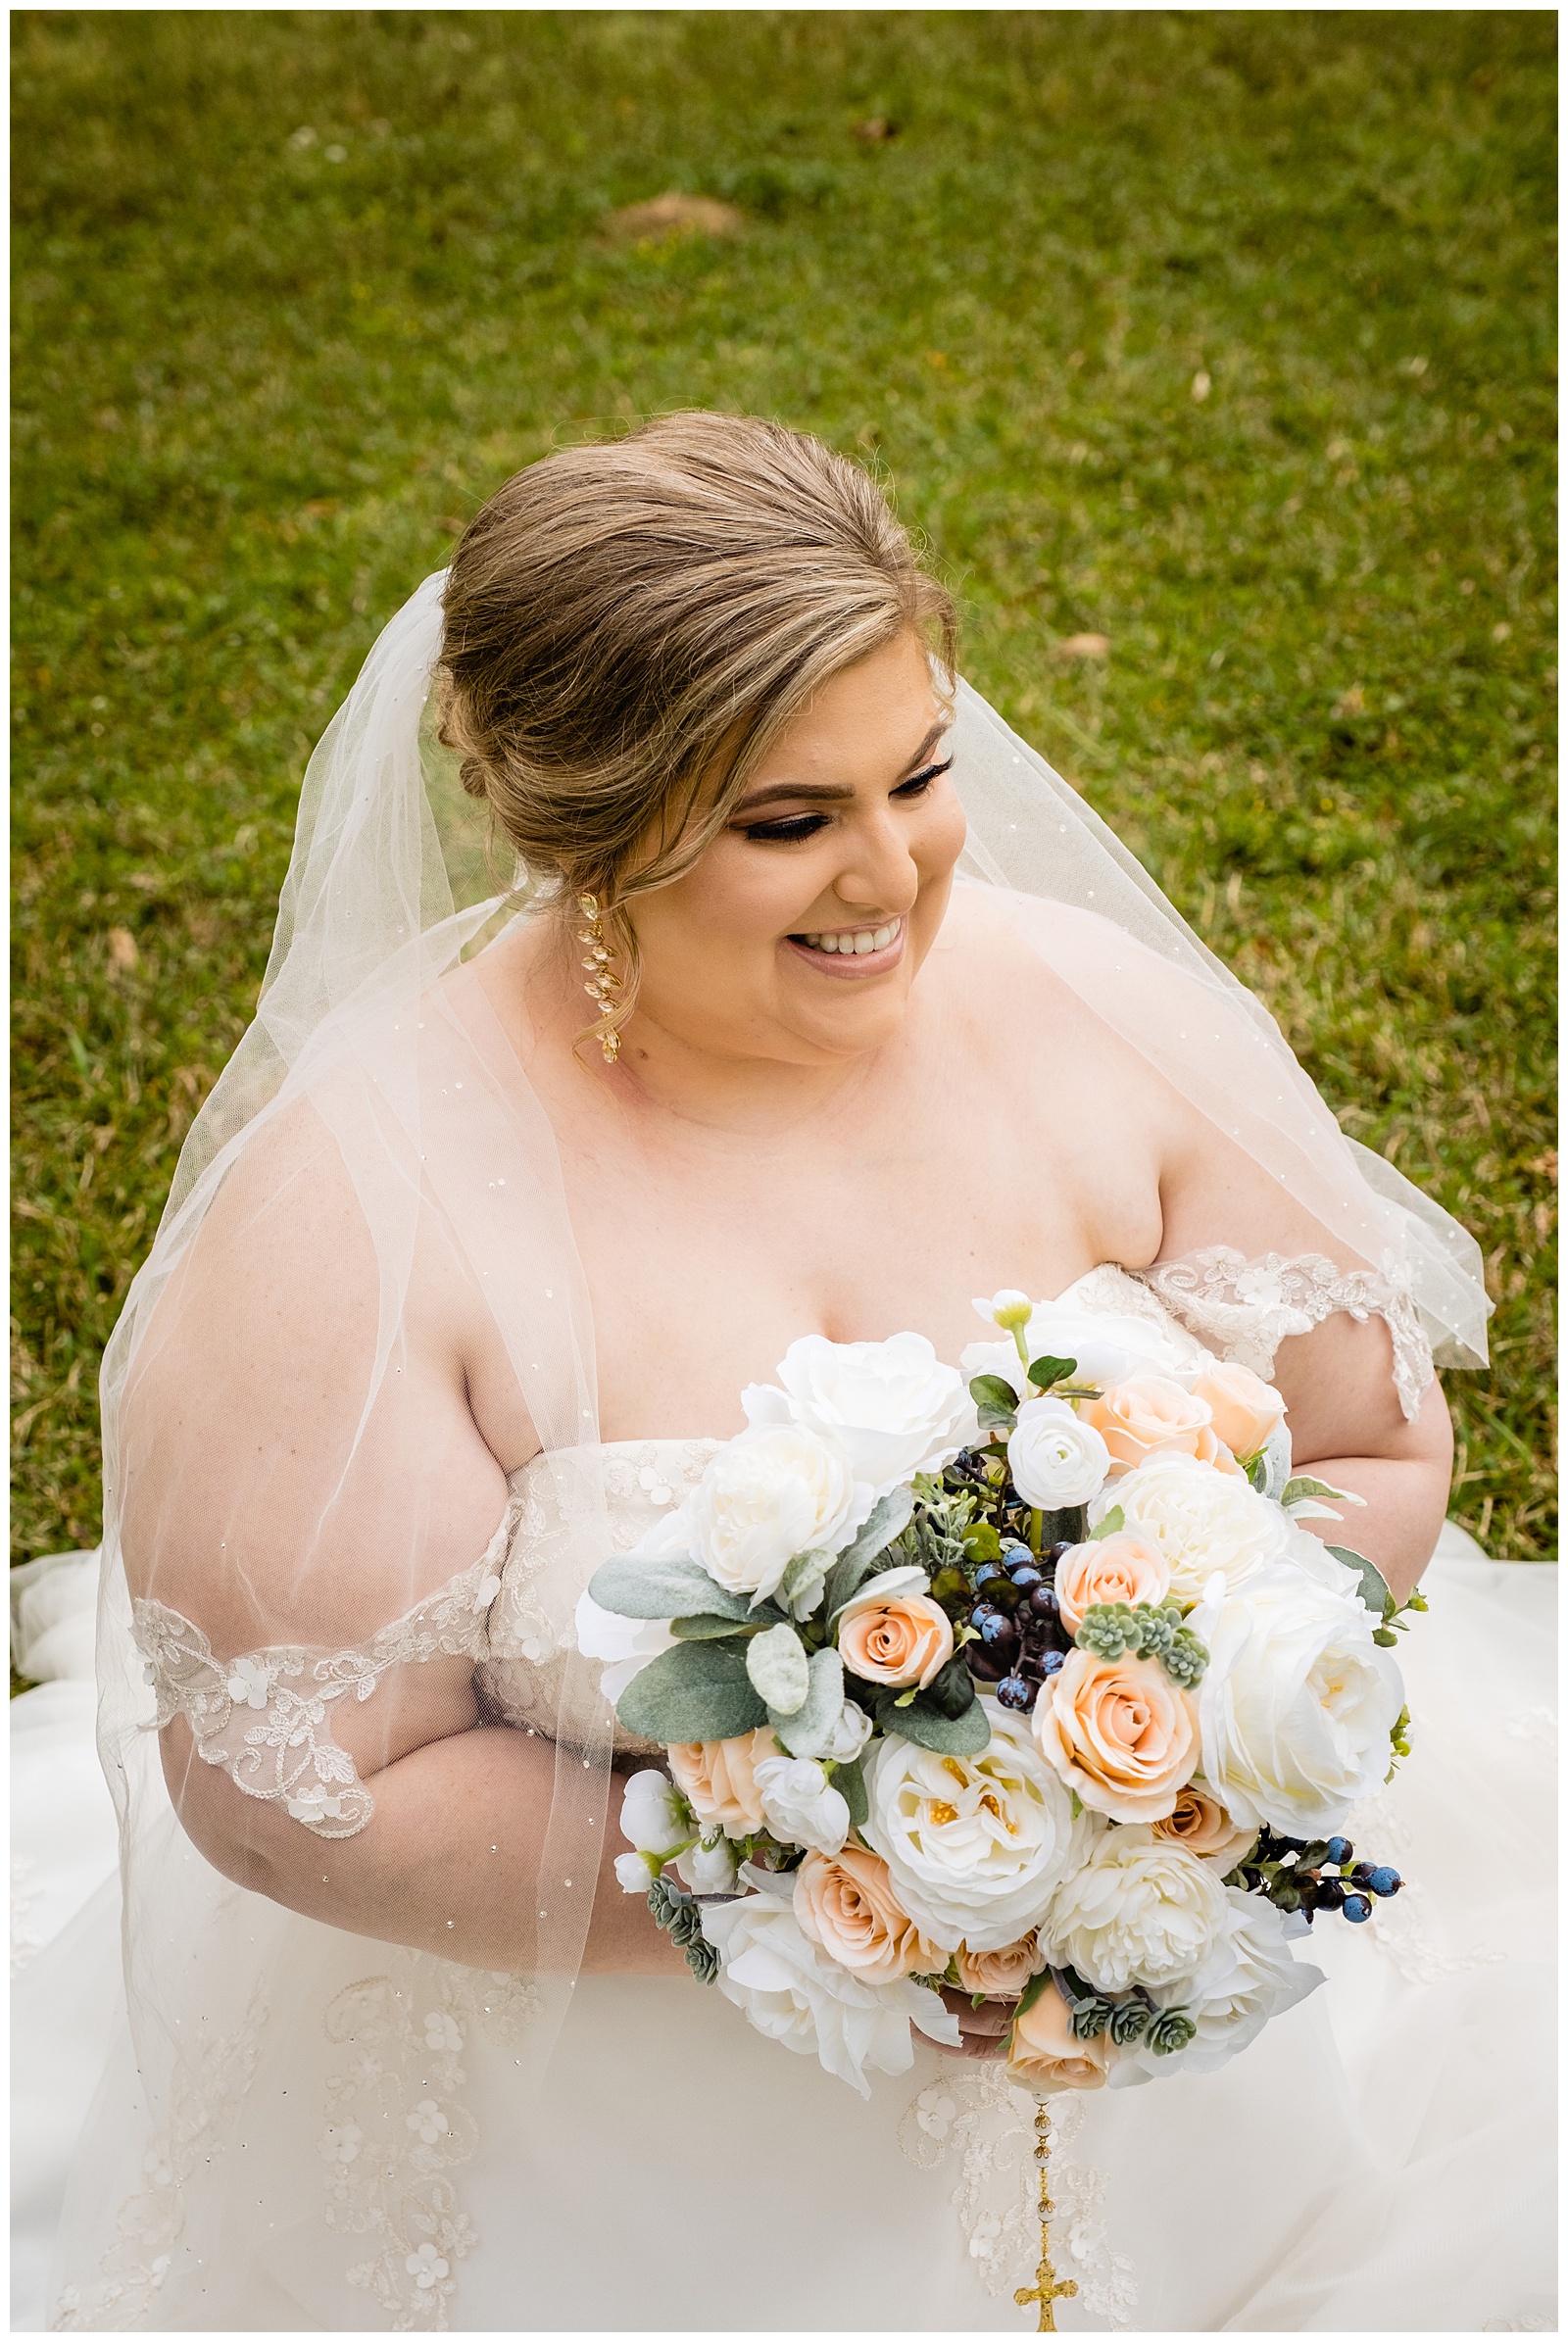 Barton Arboretum bridal photo of smiling bride holding bouquet